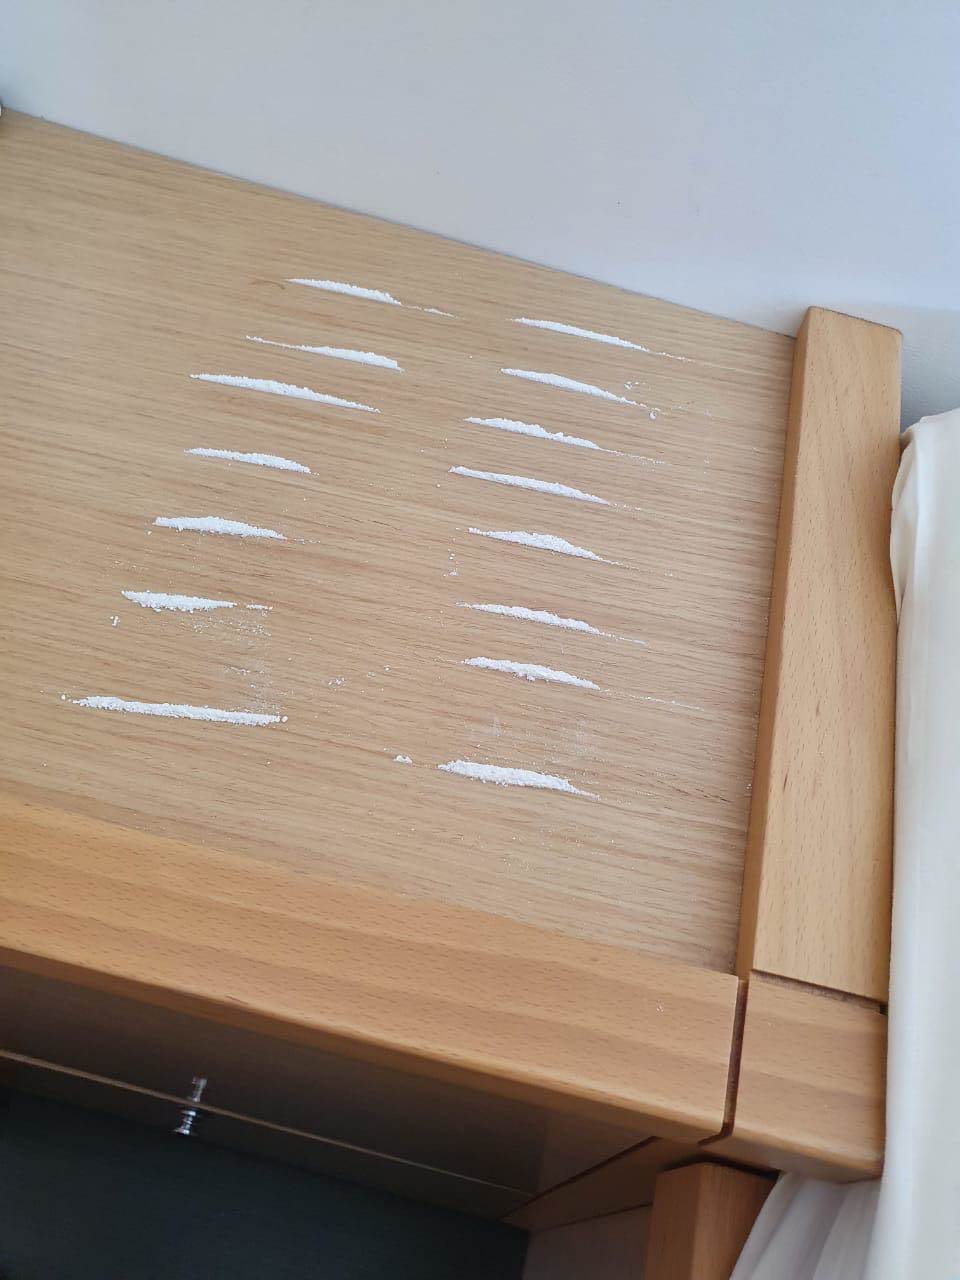  Hapšenje u Podgorici zbog 12 grama kokaina  